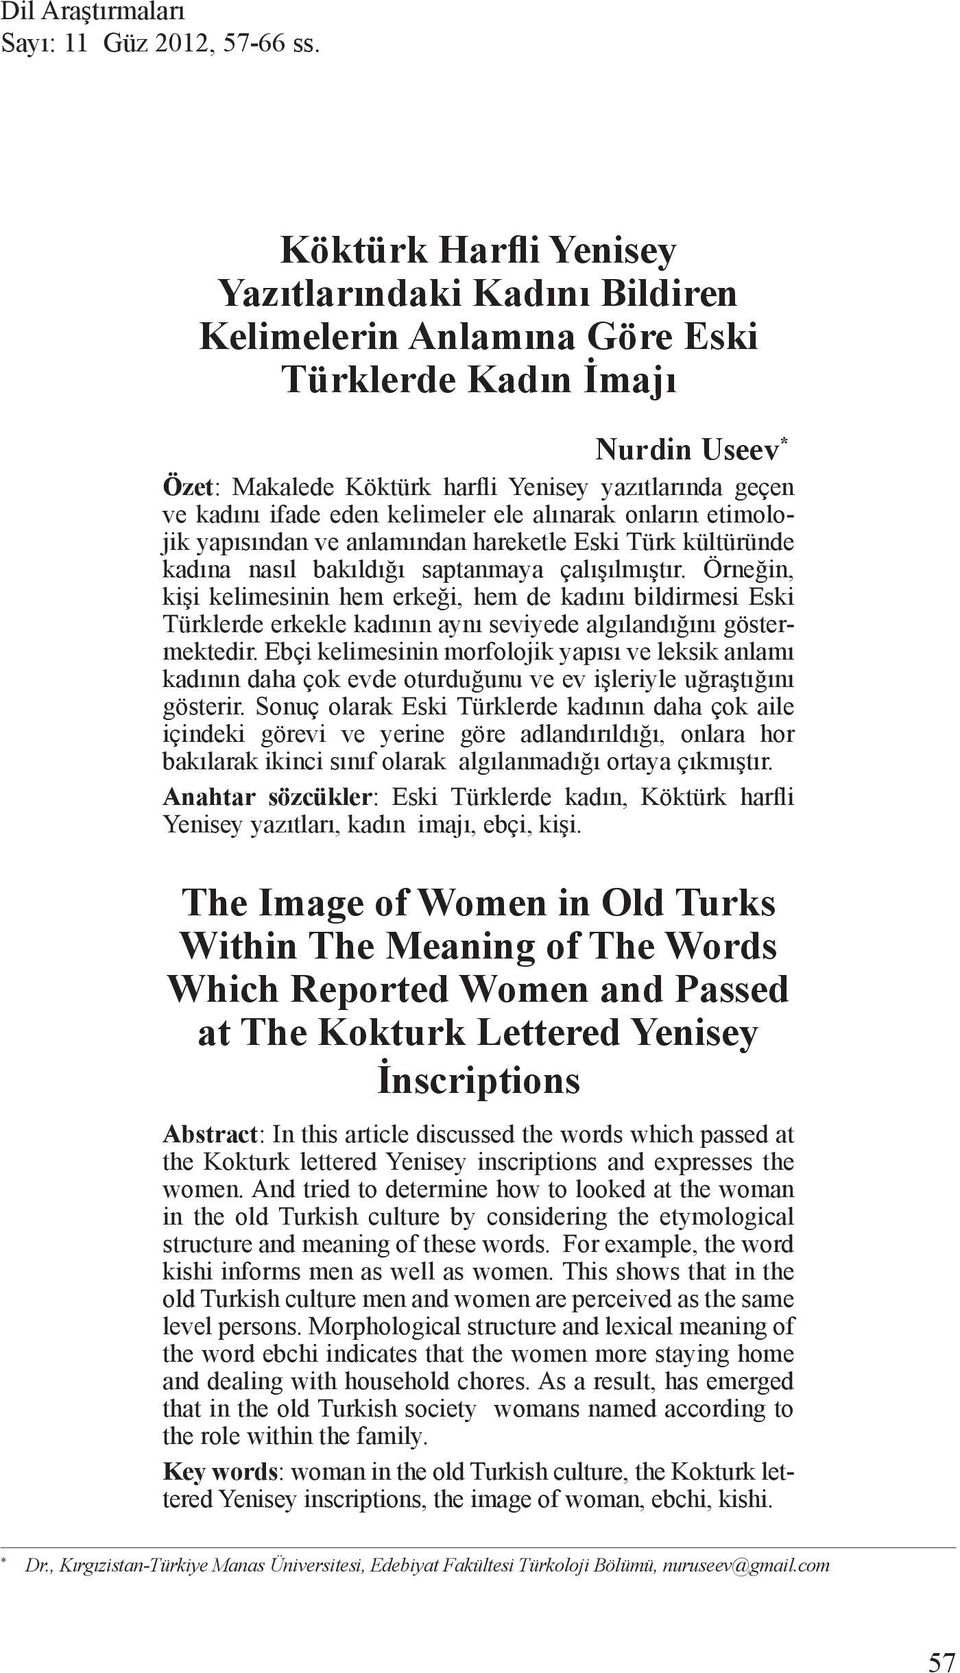 eden kelimeler ele alınarak onların etimolojik yapısından ve anlamından hareketle Eski Türk kültüründe kadına nasıl bakıldığı saptanmaya çalışılmıştır.